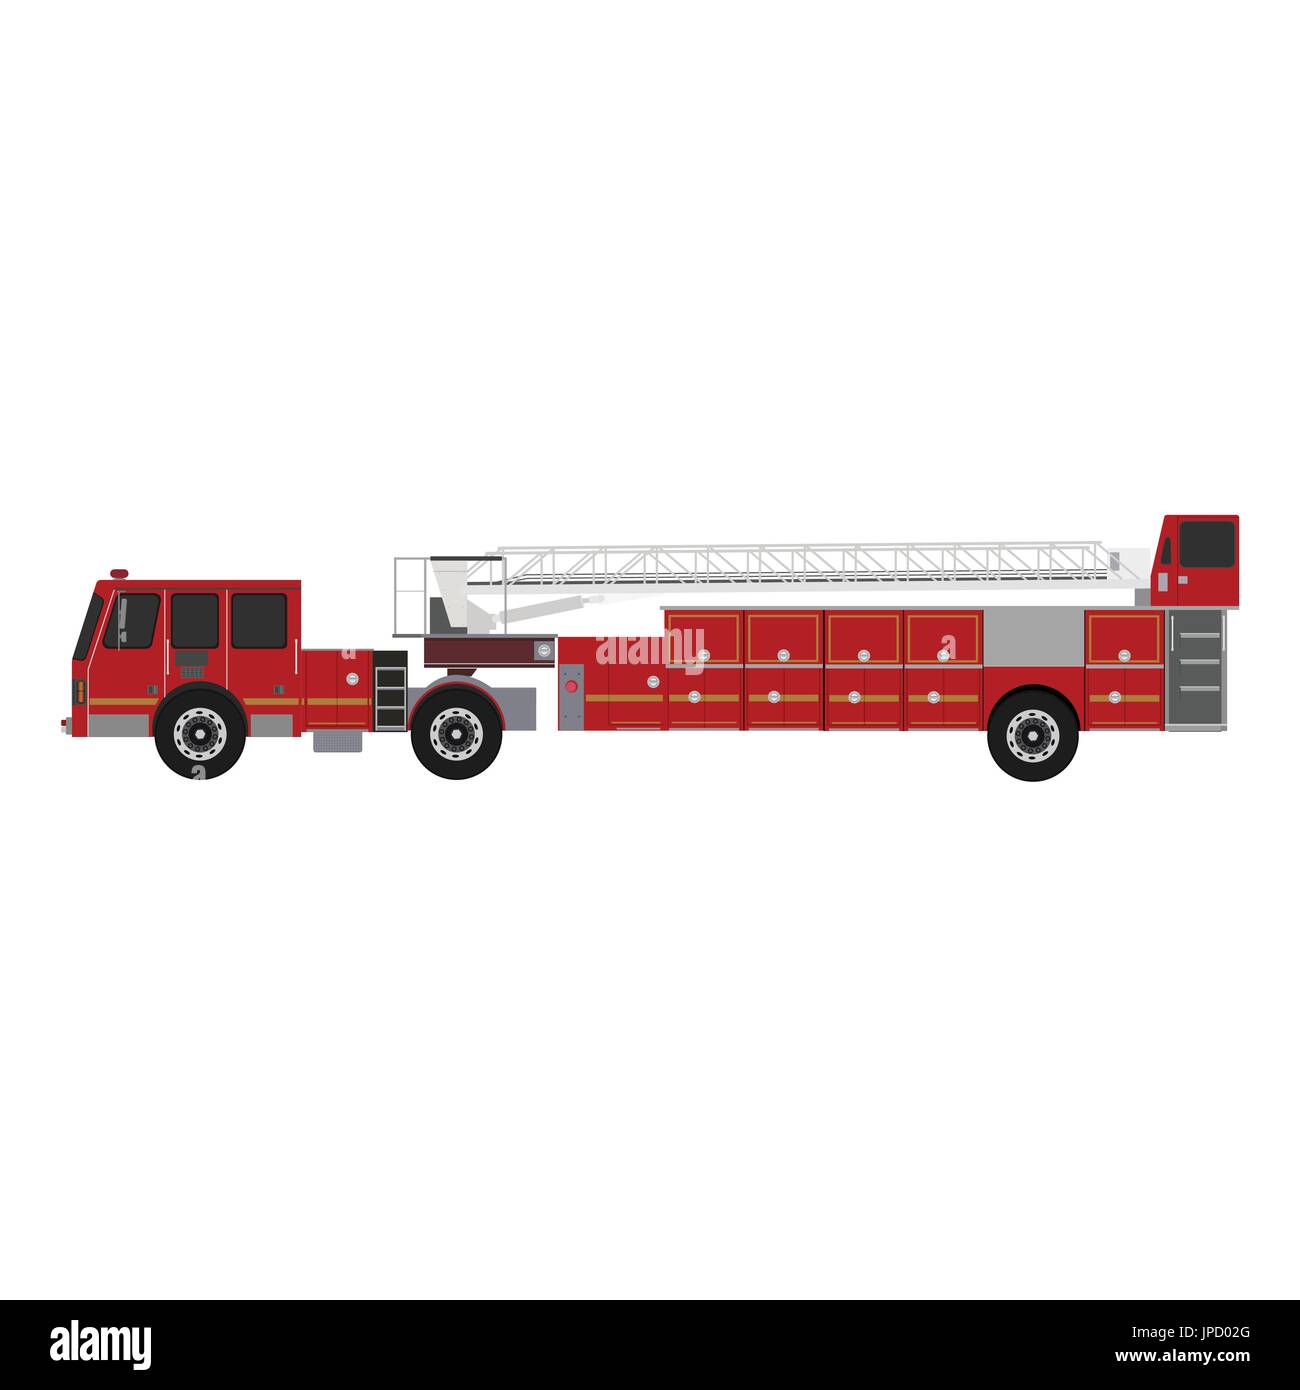 Chariot équipé de sauvetage et de lutte contre les incendies. Illustration vecteur icône camion incendie style plat Illustration de Vecteur